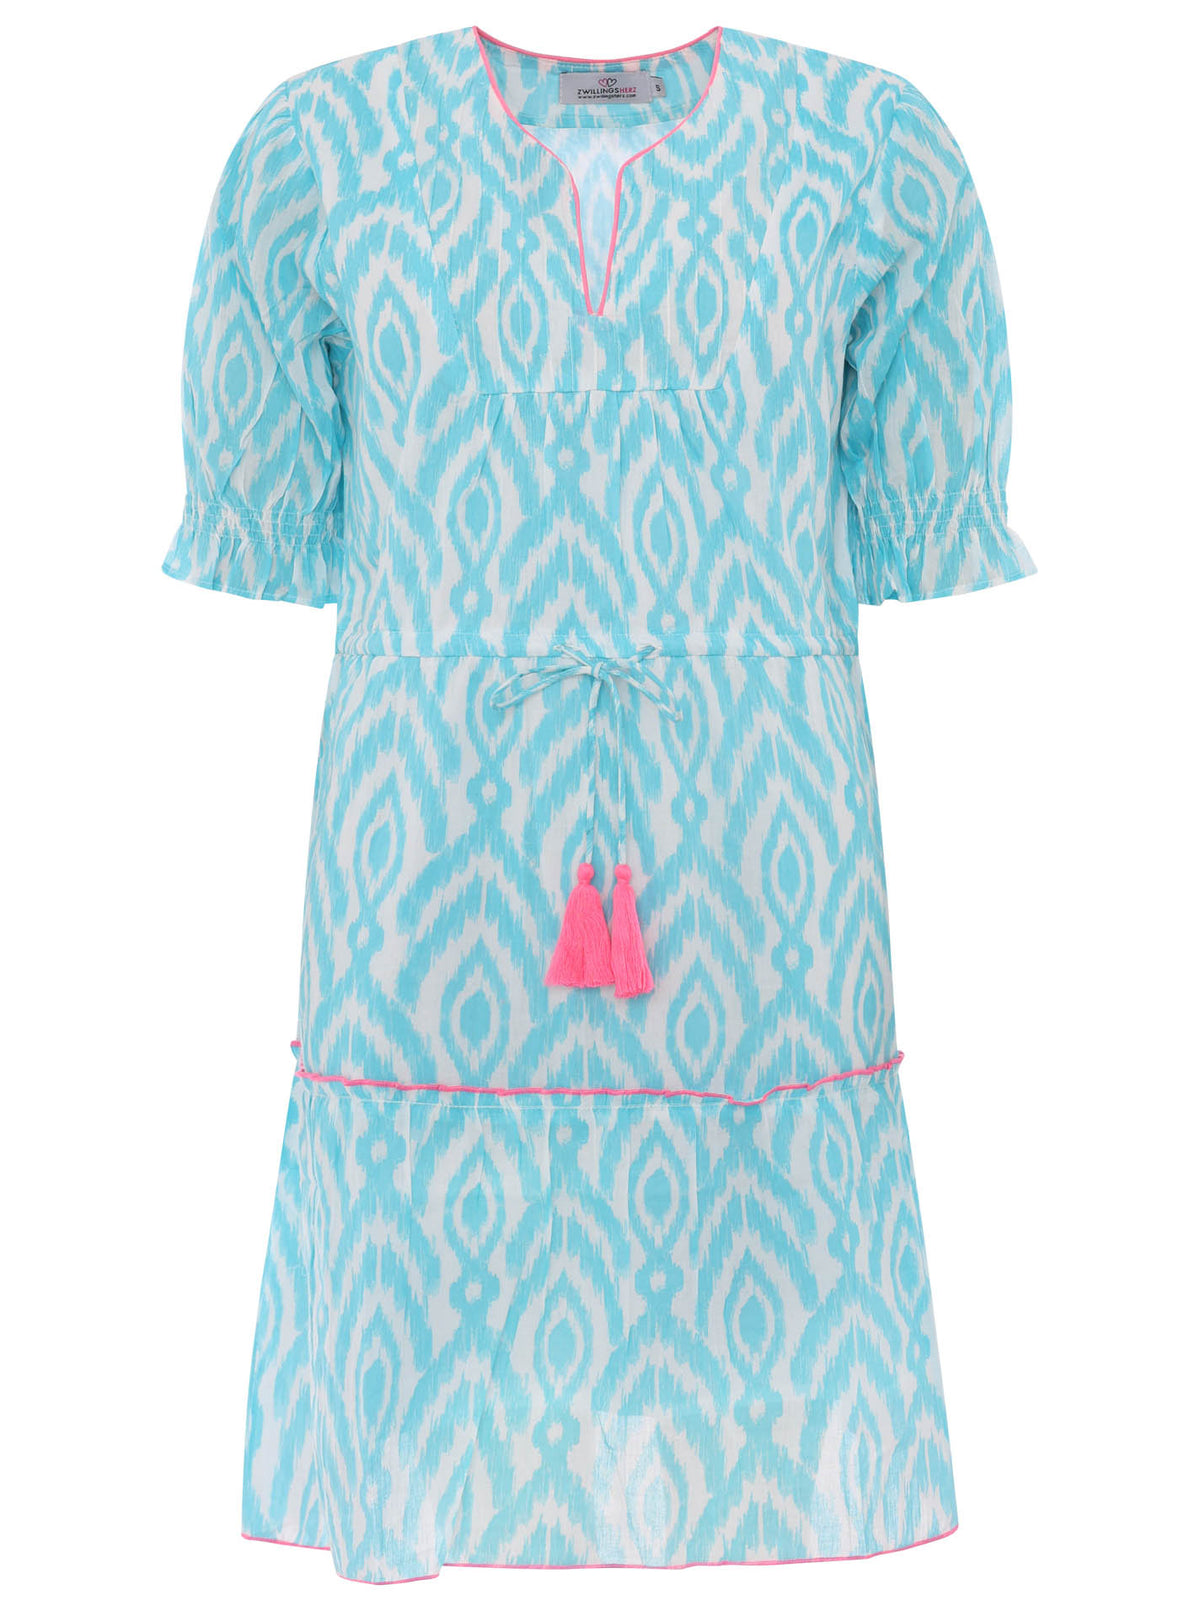 Zwillingsherz - Baumwolle Kleid mit Design - Hellblau/Weiß